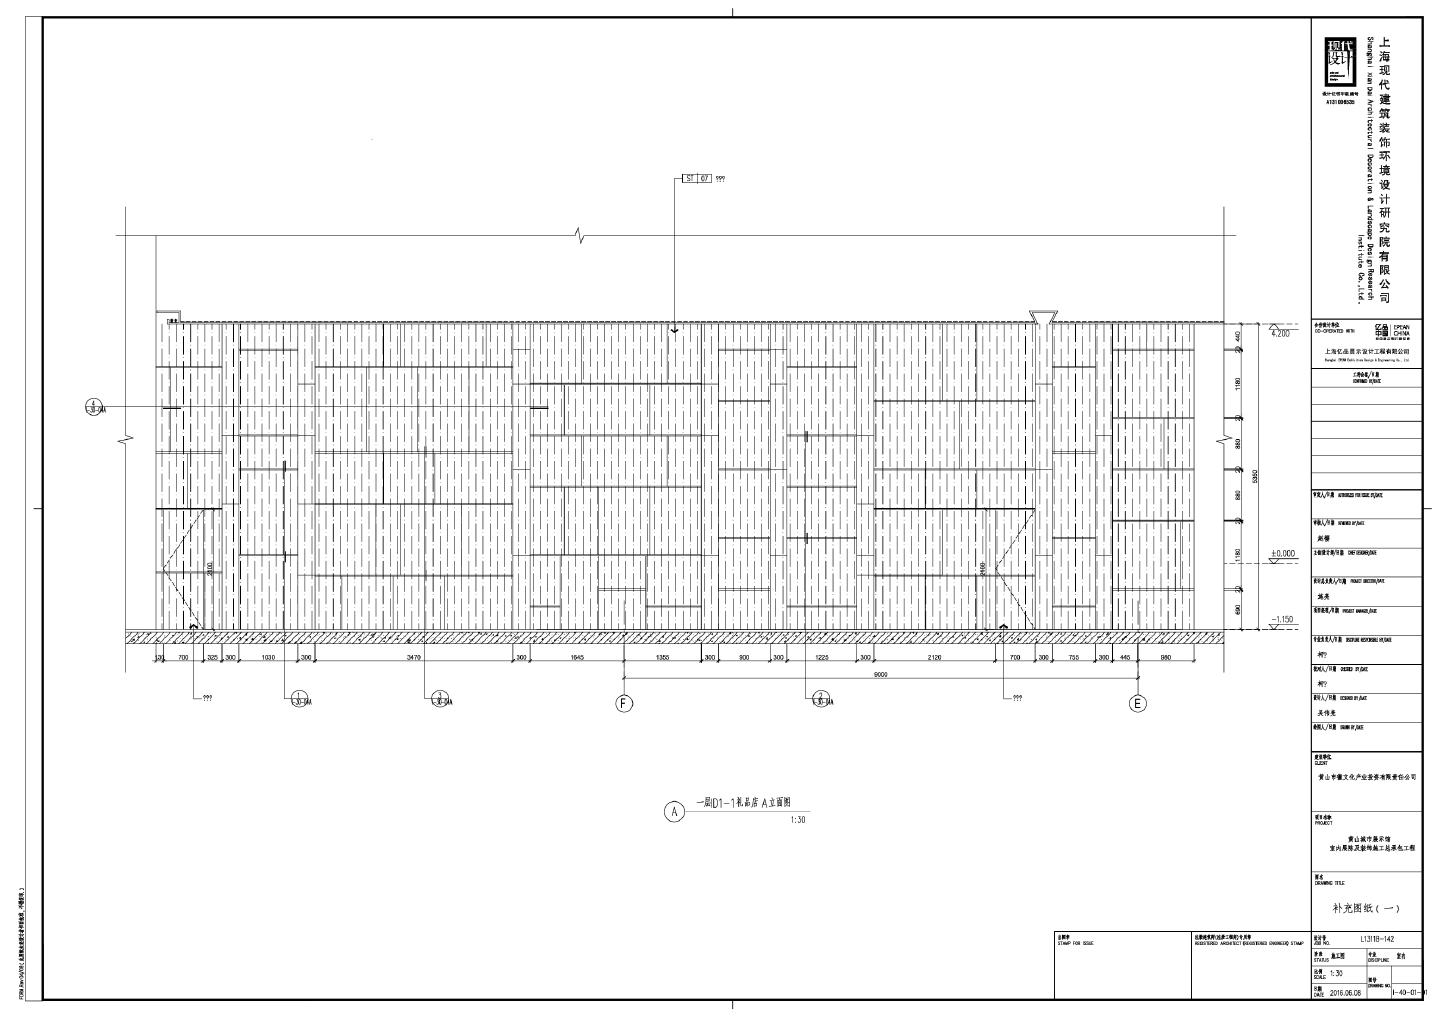 黄山城市展示馆室内展陈及装饰施工总承包工程-补充图纸（一）CAD图.dwg